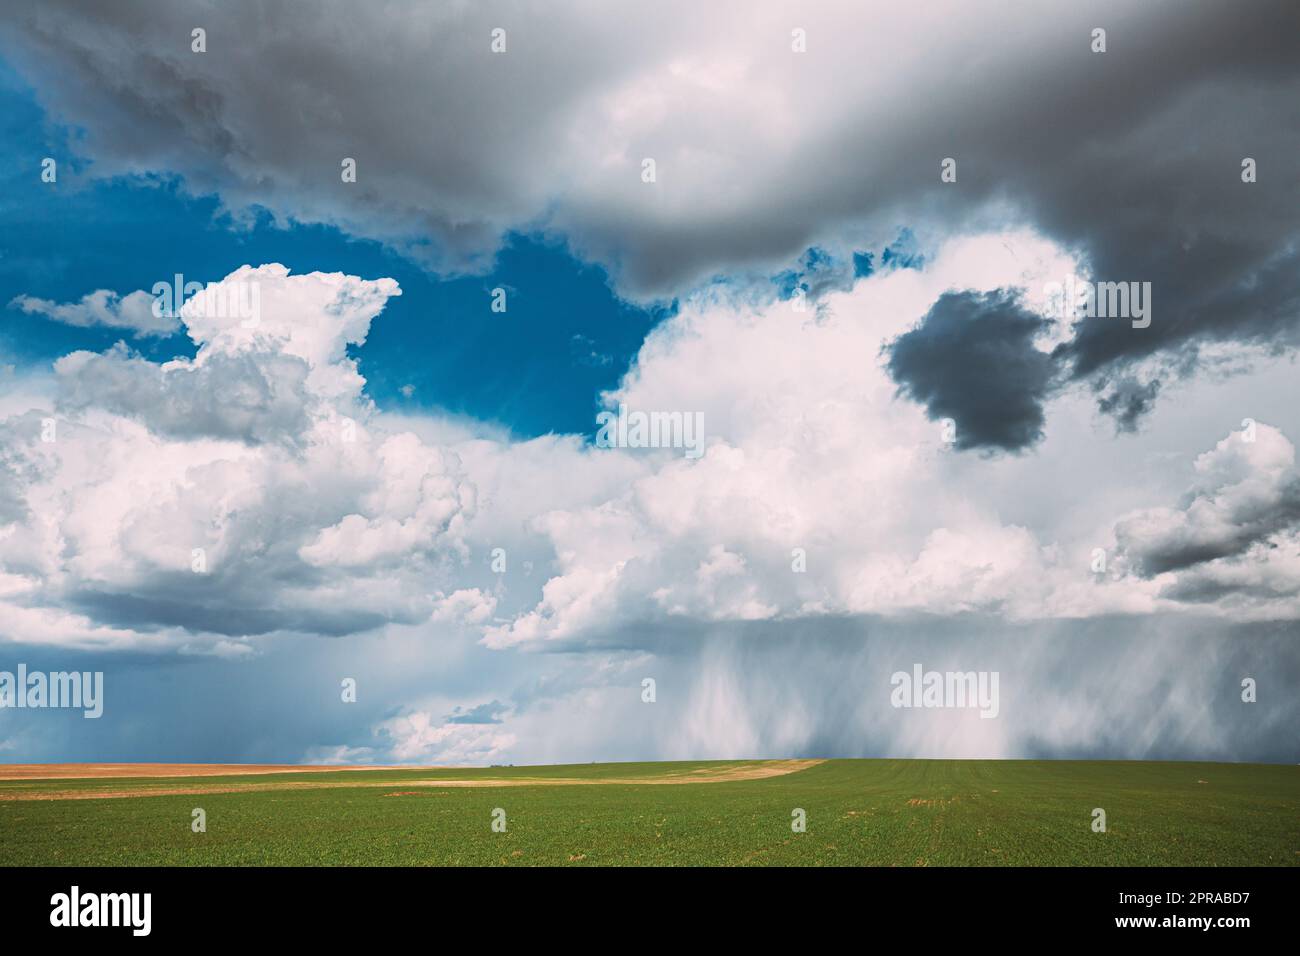 Campagne rurale Field Meadow Paysage dans Sunny Rainy Spring Day. Ciel pittoresque avec nuages de pluie sur Horizon. Concept de prévision agricole et météorologique Banque D'Images